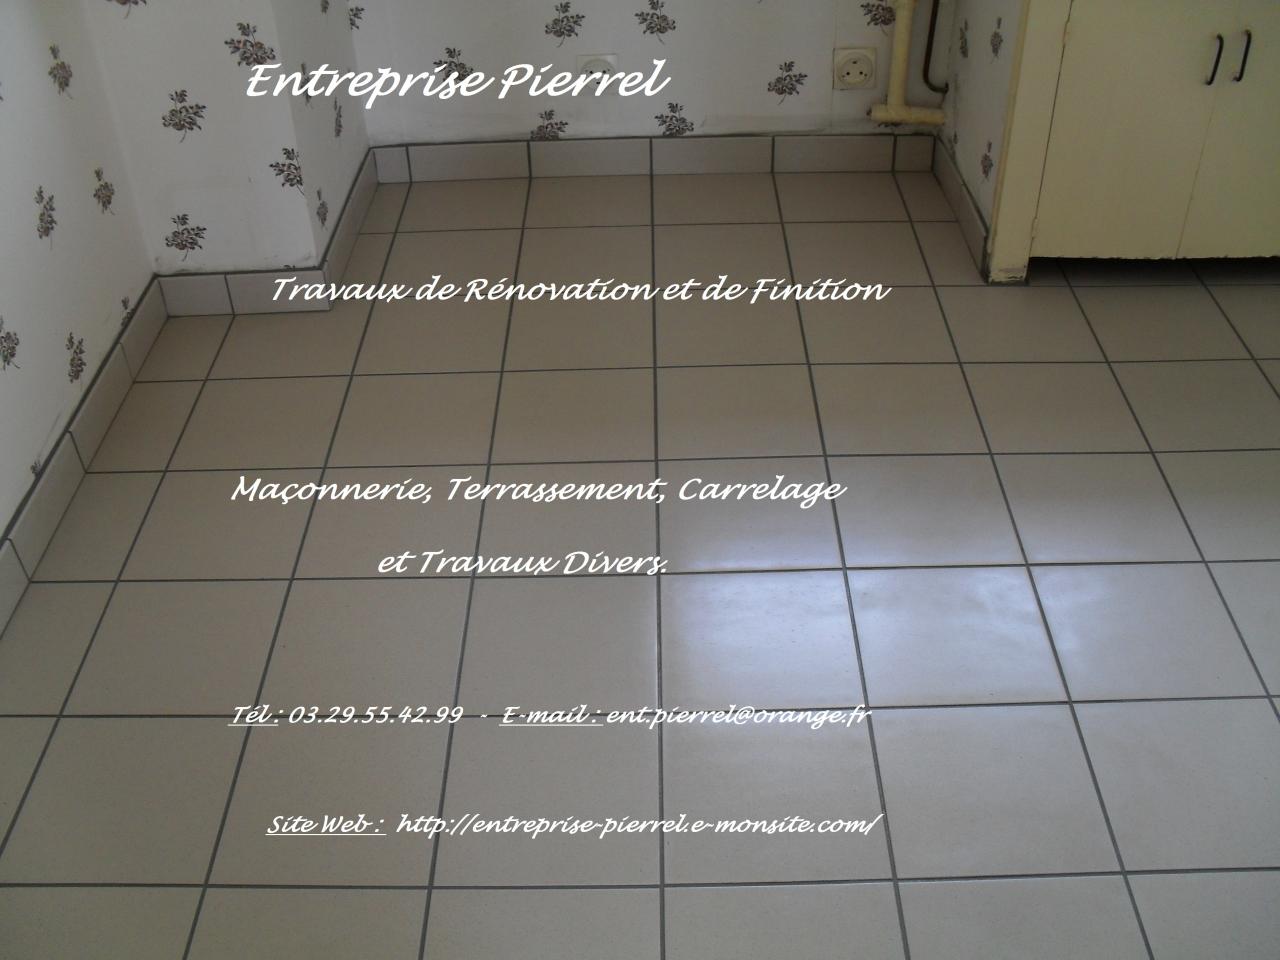 Carrelage au sol : Entreprise Pierrel - 88100 Taintrux. 03.29.55.42.99.